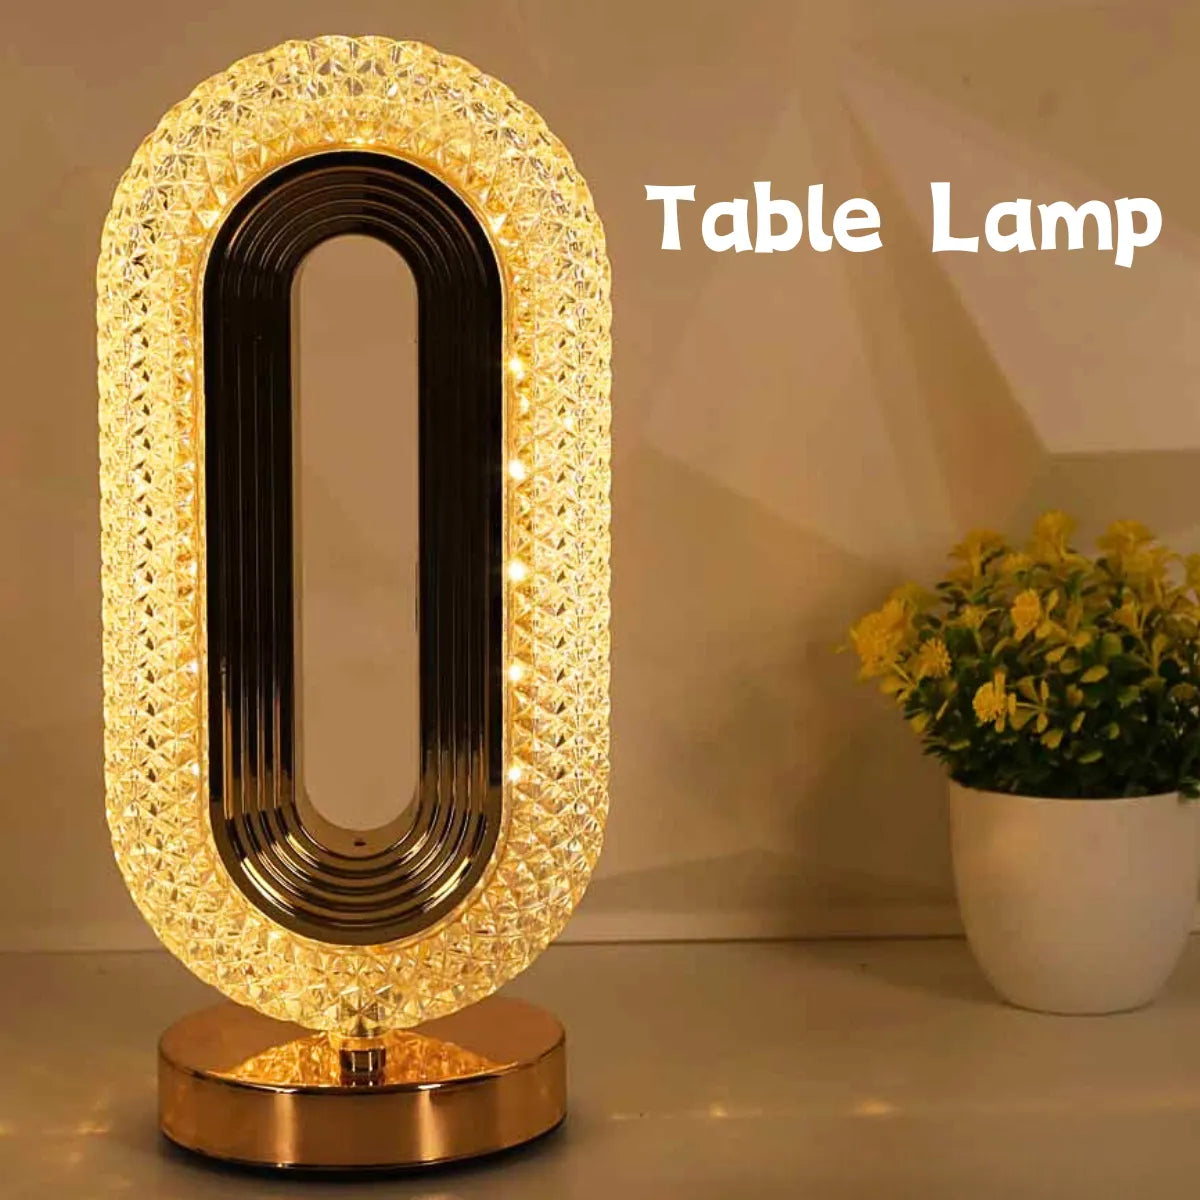 Lampe de Table en Cristal, Lampe Cristal Lampe de Chevet Chambre, Dimmable  Lampe de Table Sans fil LED Rechargeable USB pour Chevet, Camping